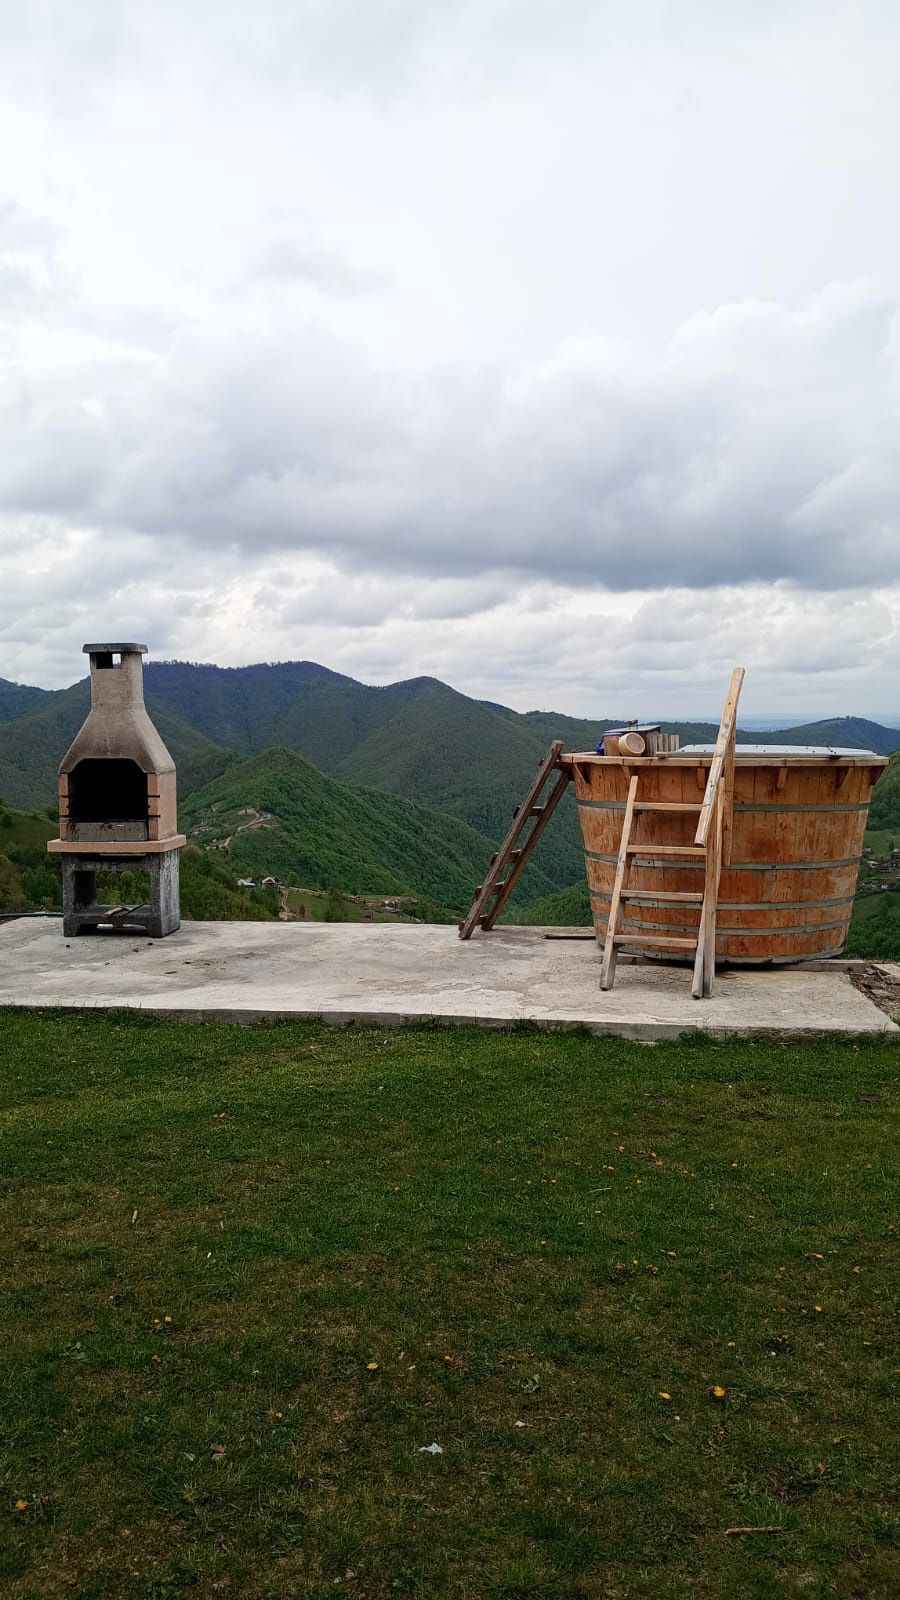 Cabană de închiriat la Muntele-Rece, 30 de km de Cluj.